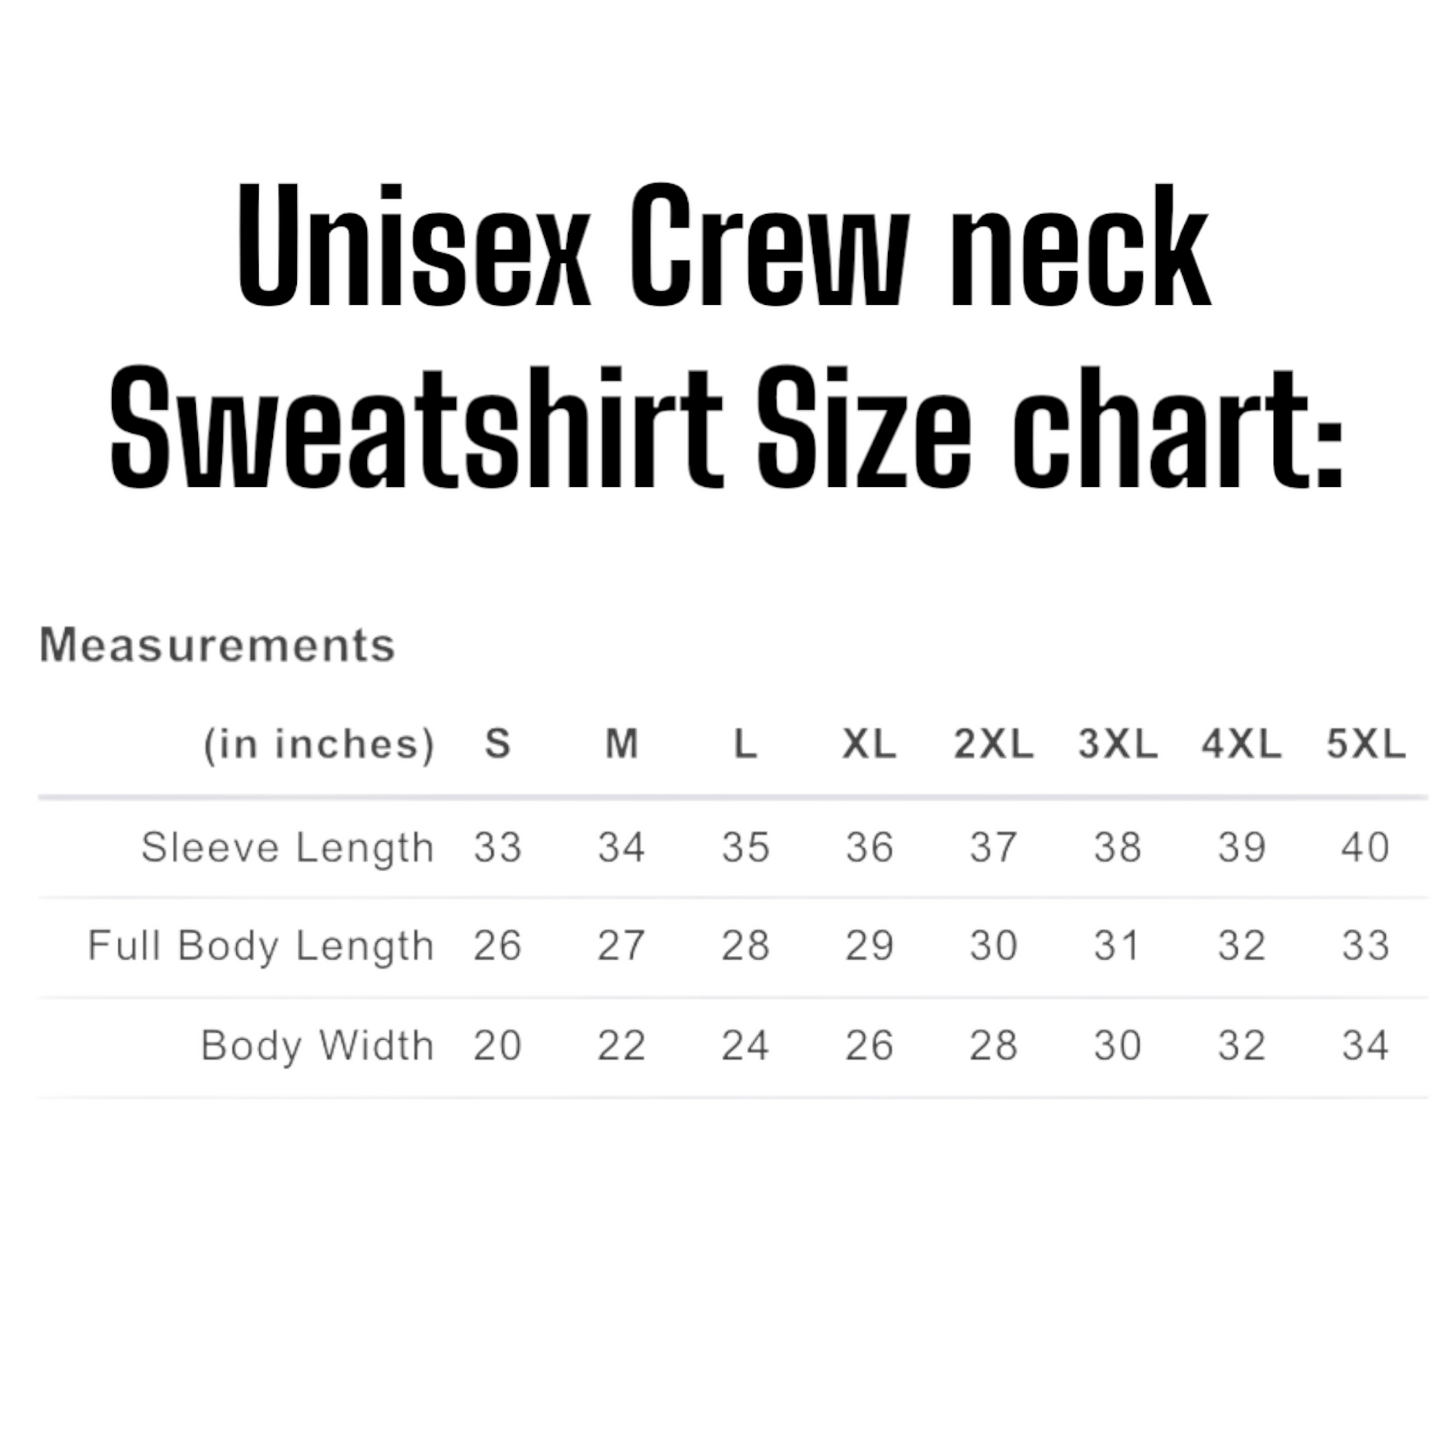 The Life Crewneck Sweatshirt or Tee